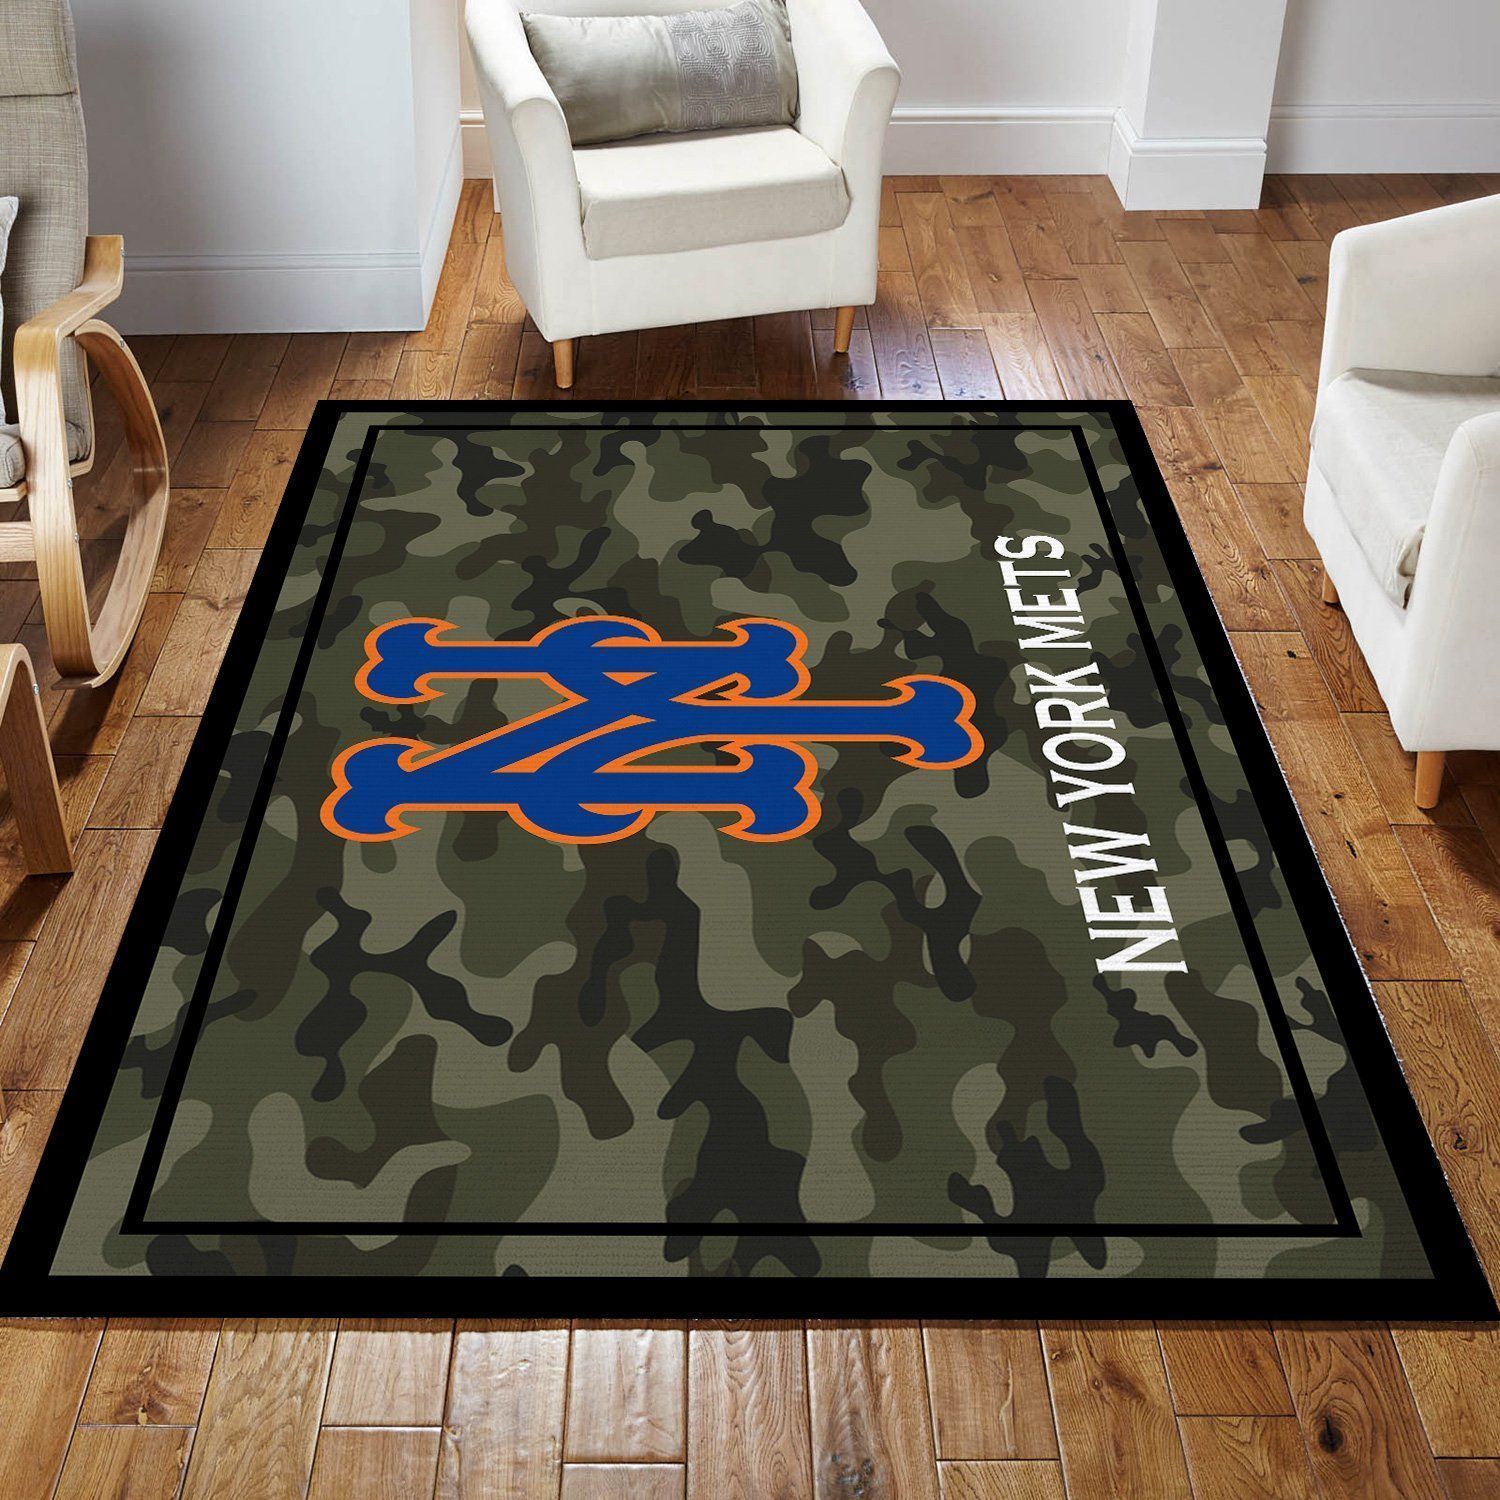 New York Mets MLB Baseball Area Rug MLB251089 Baseball Floor Decor The US Decor - Indoor Outdoor Rugs 3